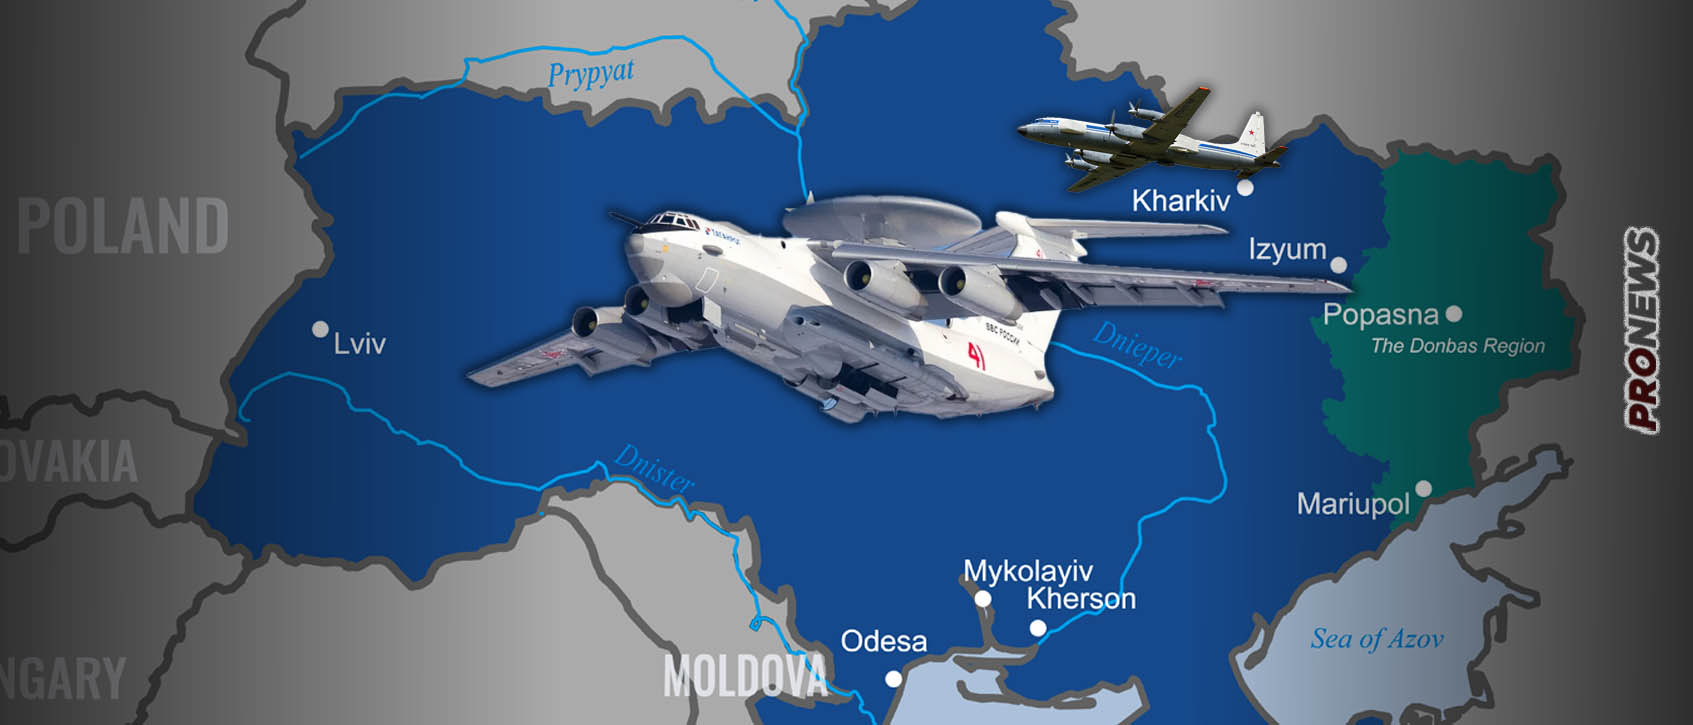 Οι Ουκρανοί λένε πως κατέρριψαν δύο ρωσικά αεροσκάφη AEW&C και COMINT – Μόσχα: «Δεν έχουμε πληροφορία για κάτι τέτοιο»